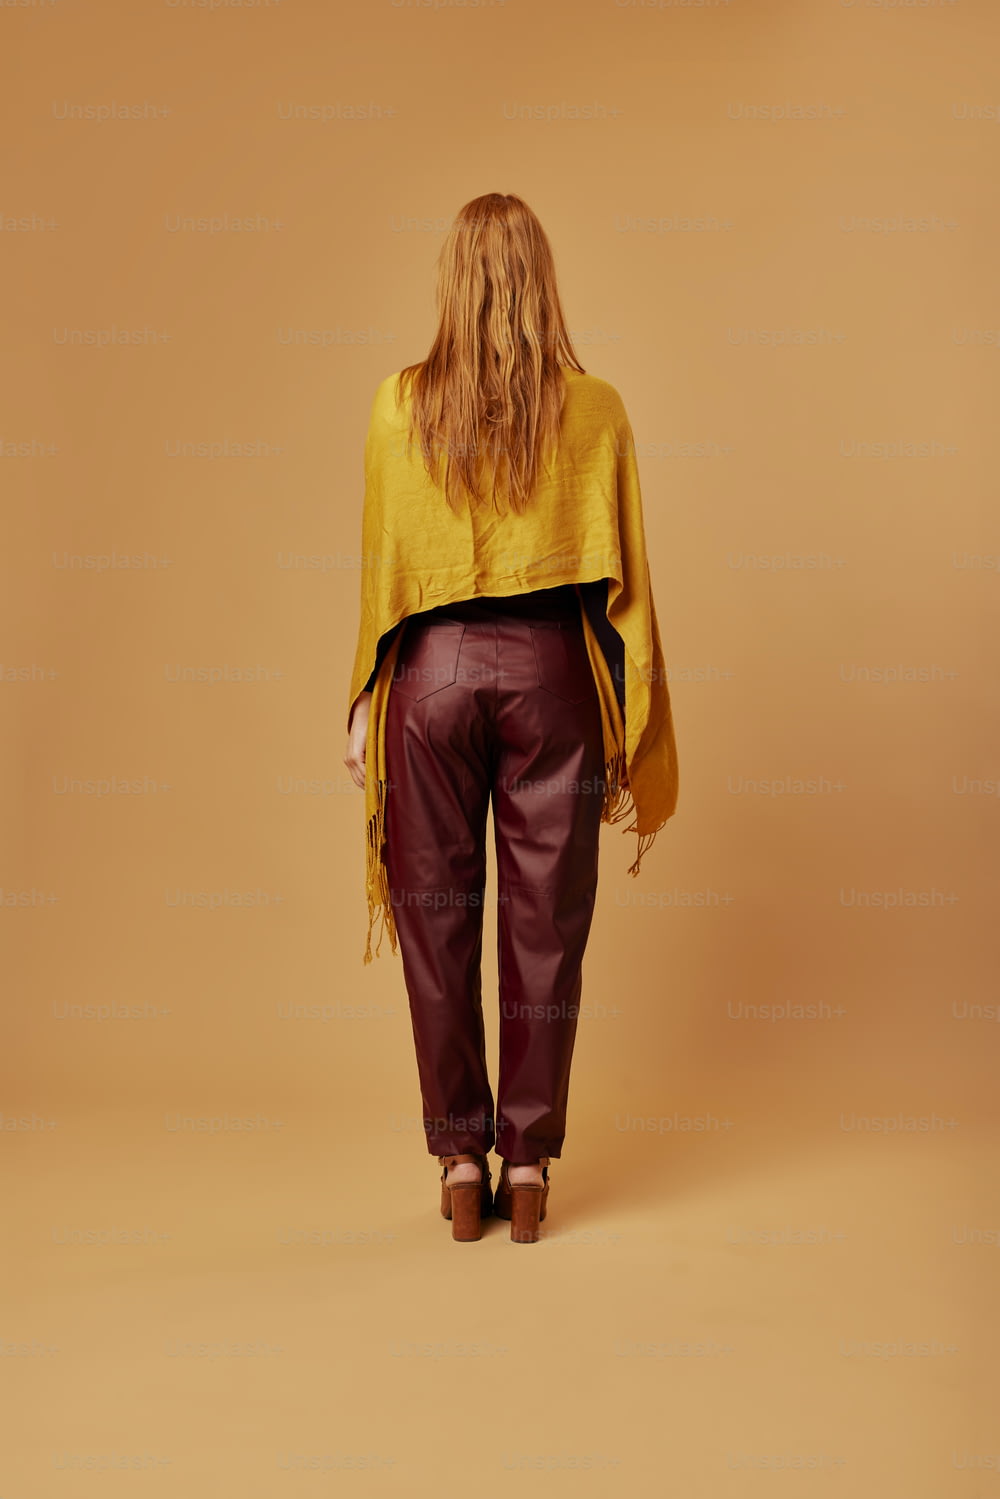 Eine Frau in einem gelben Oberteil und einer kastanienbraunen Hose